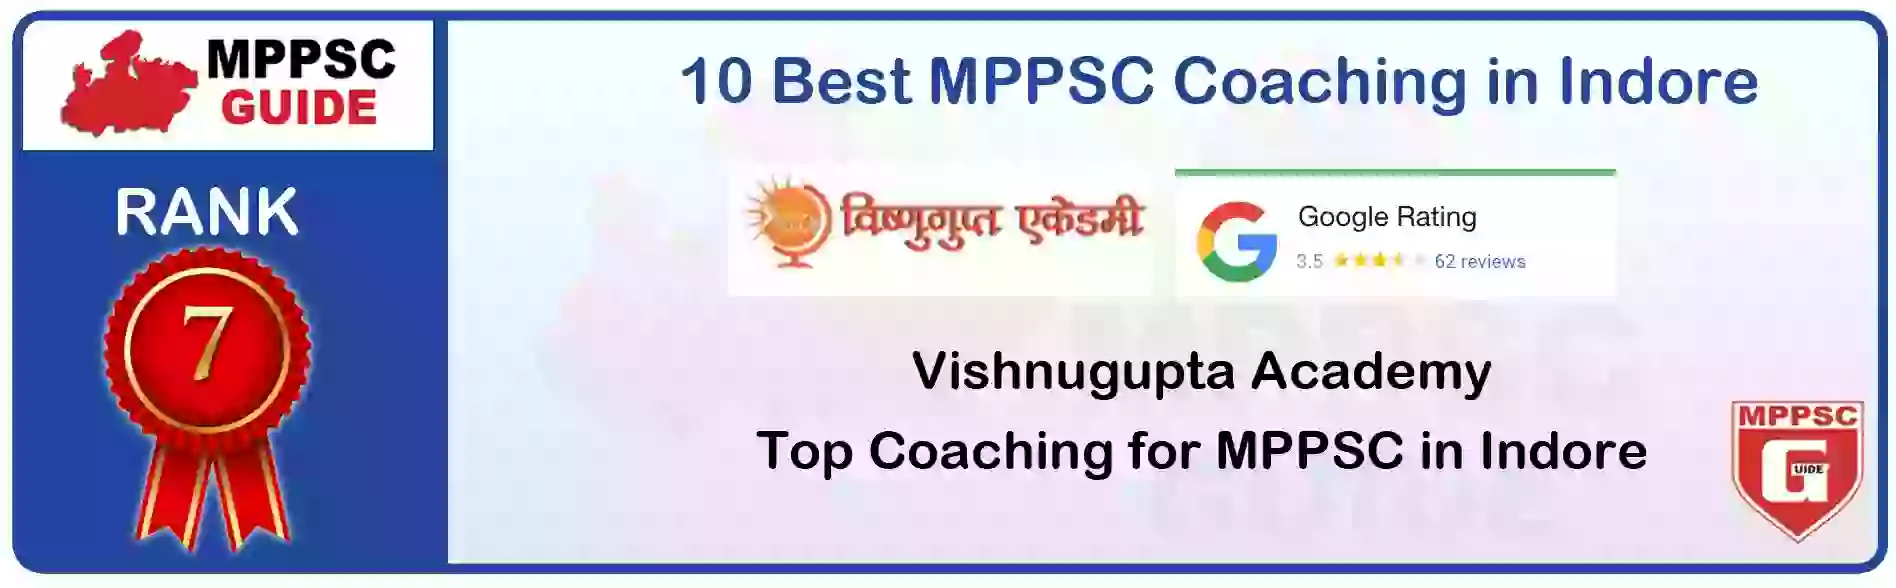 MPPSC Coaching in Sidhi, MPPSC Coaching Institute In Sidhi, Best MPPSC Coaching in Sidhi, Top 10 MPPSC Coaching In Sidhi, best mppsc coaching institute in sidhi, MPPSC Coaching Classes In Sidhi, MPPSC Online Coaching In Sidhi, mppsc coaching in Sidhi bhanwarkua